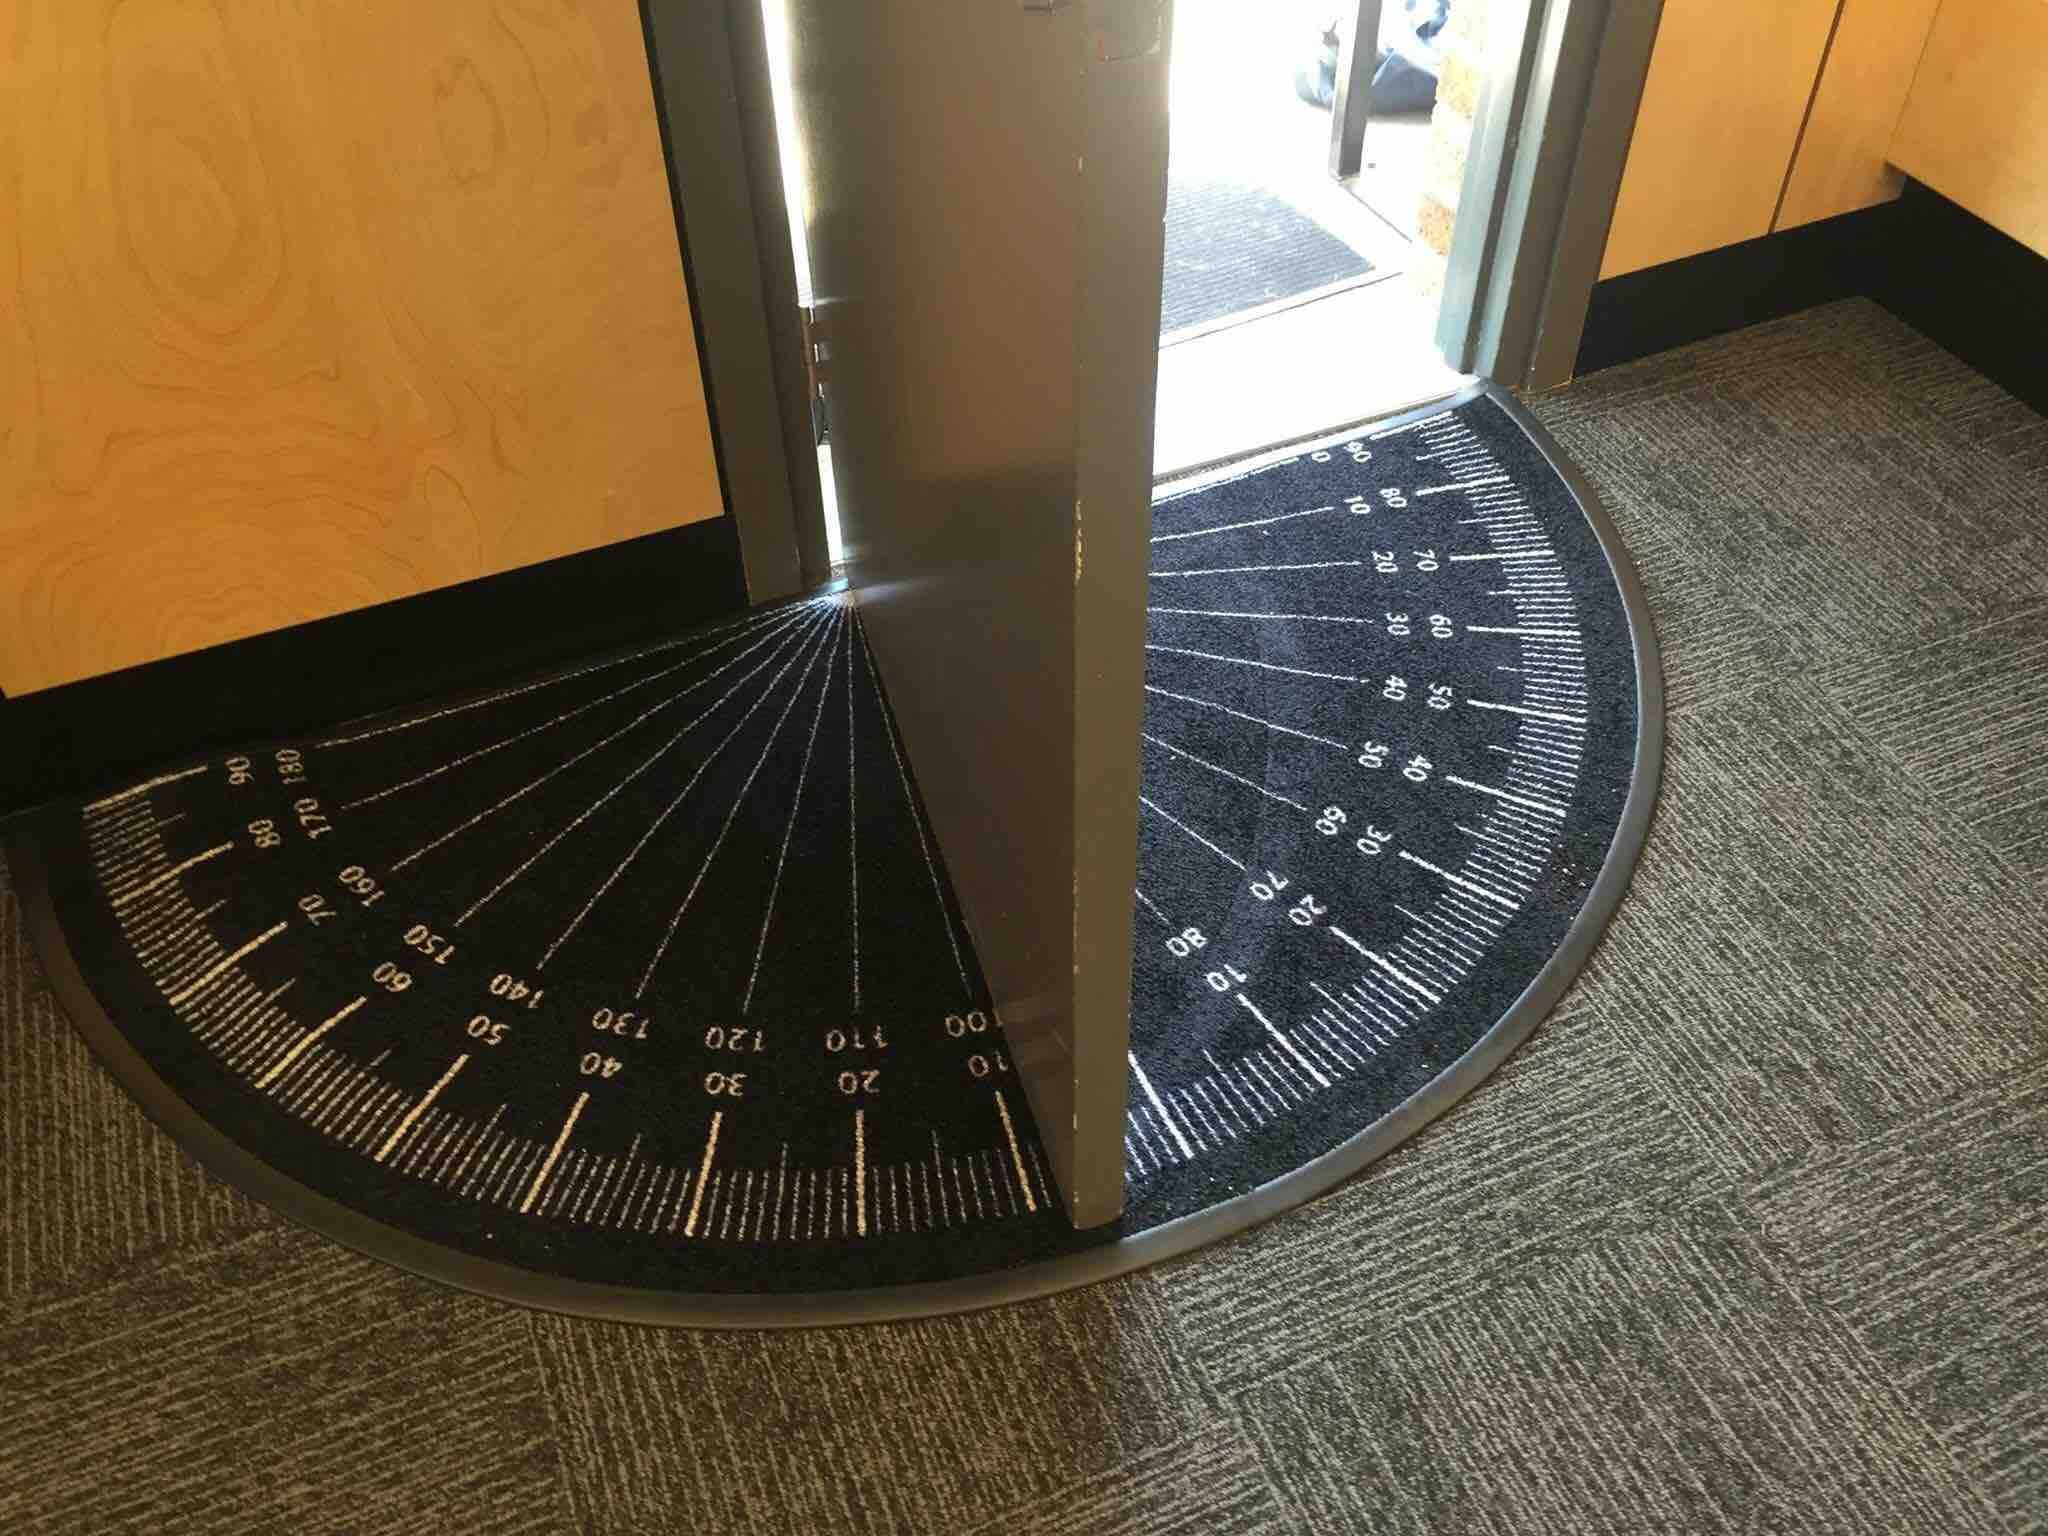 this doormat measures the angle of the open door